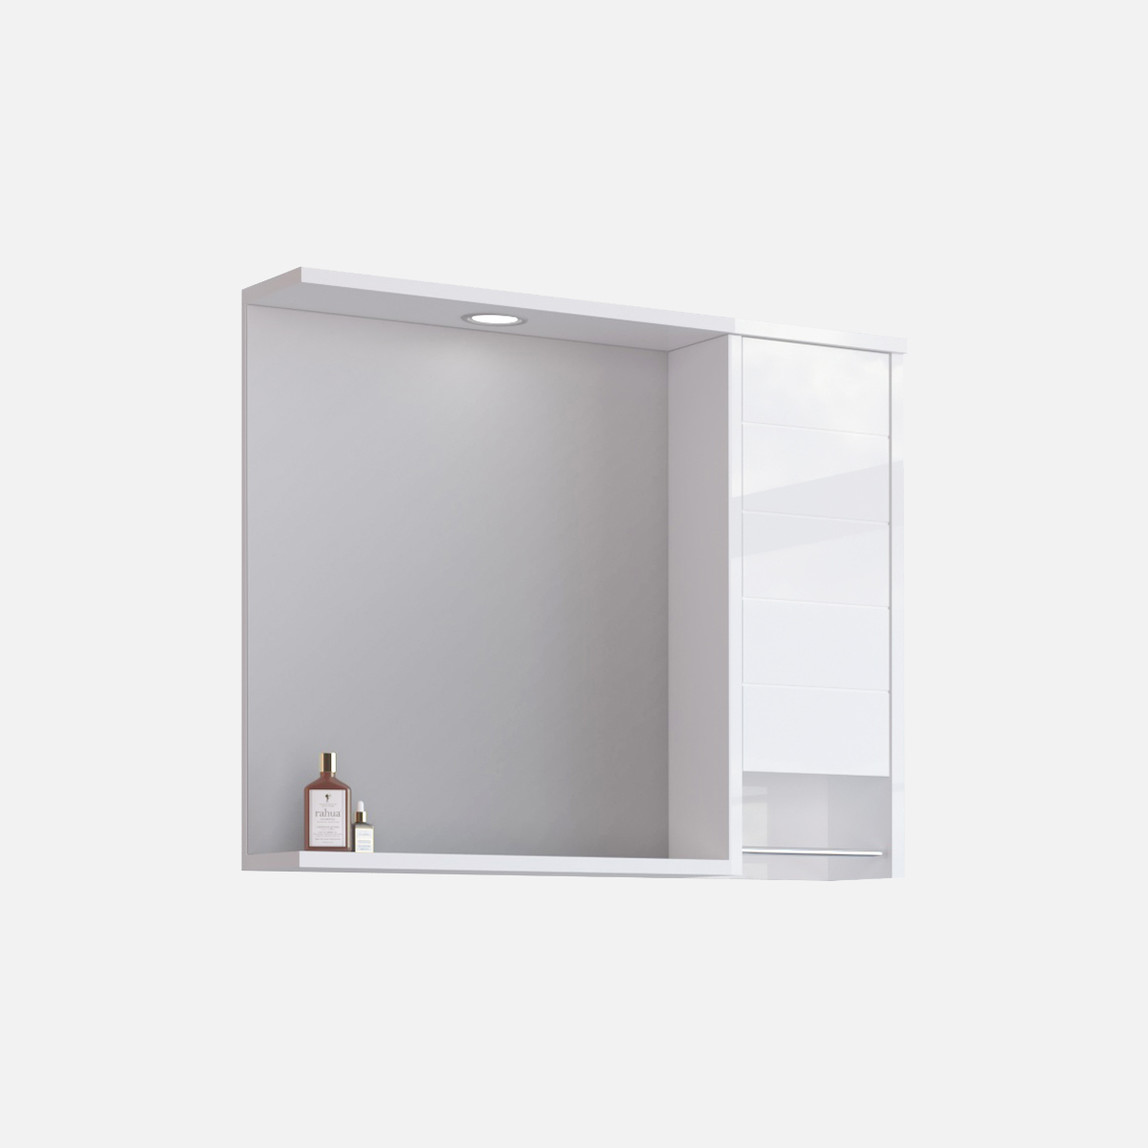    Bonitobagno Göksu Aynalı 80 cm Üst Modül Banyo Dolabı 